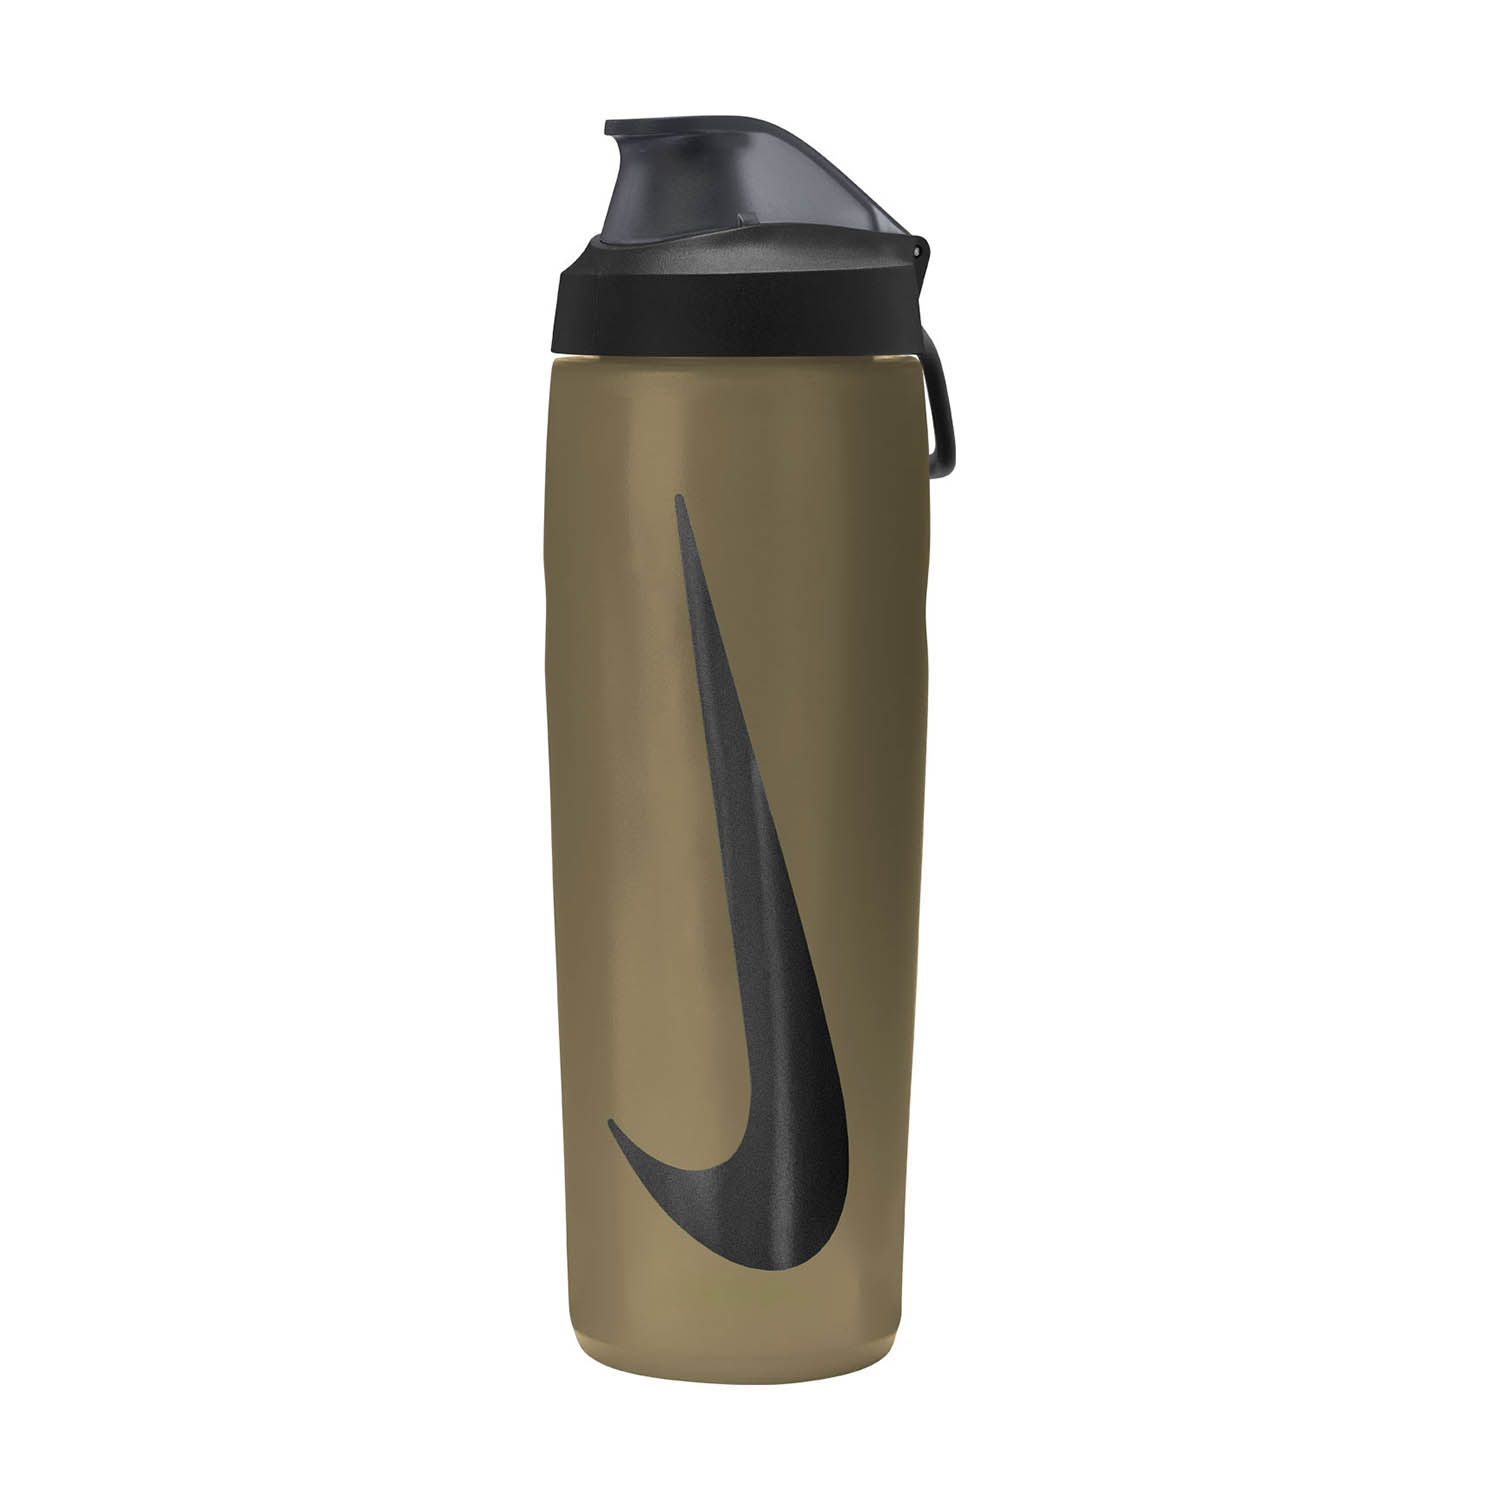 Nike Refuel Locking Water Bottle - Metallic Gold/Black/Black Iridescent